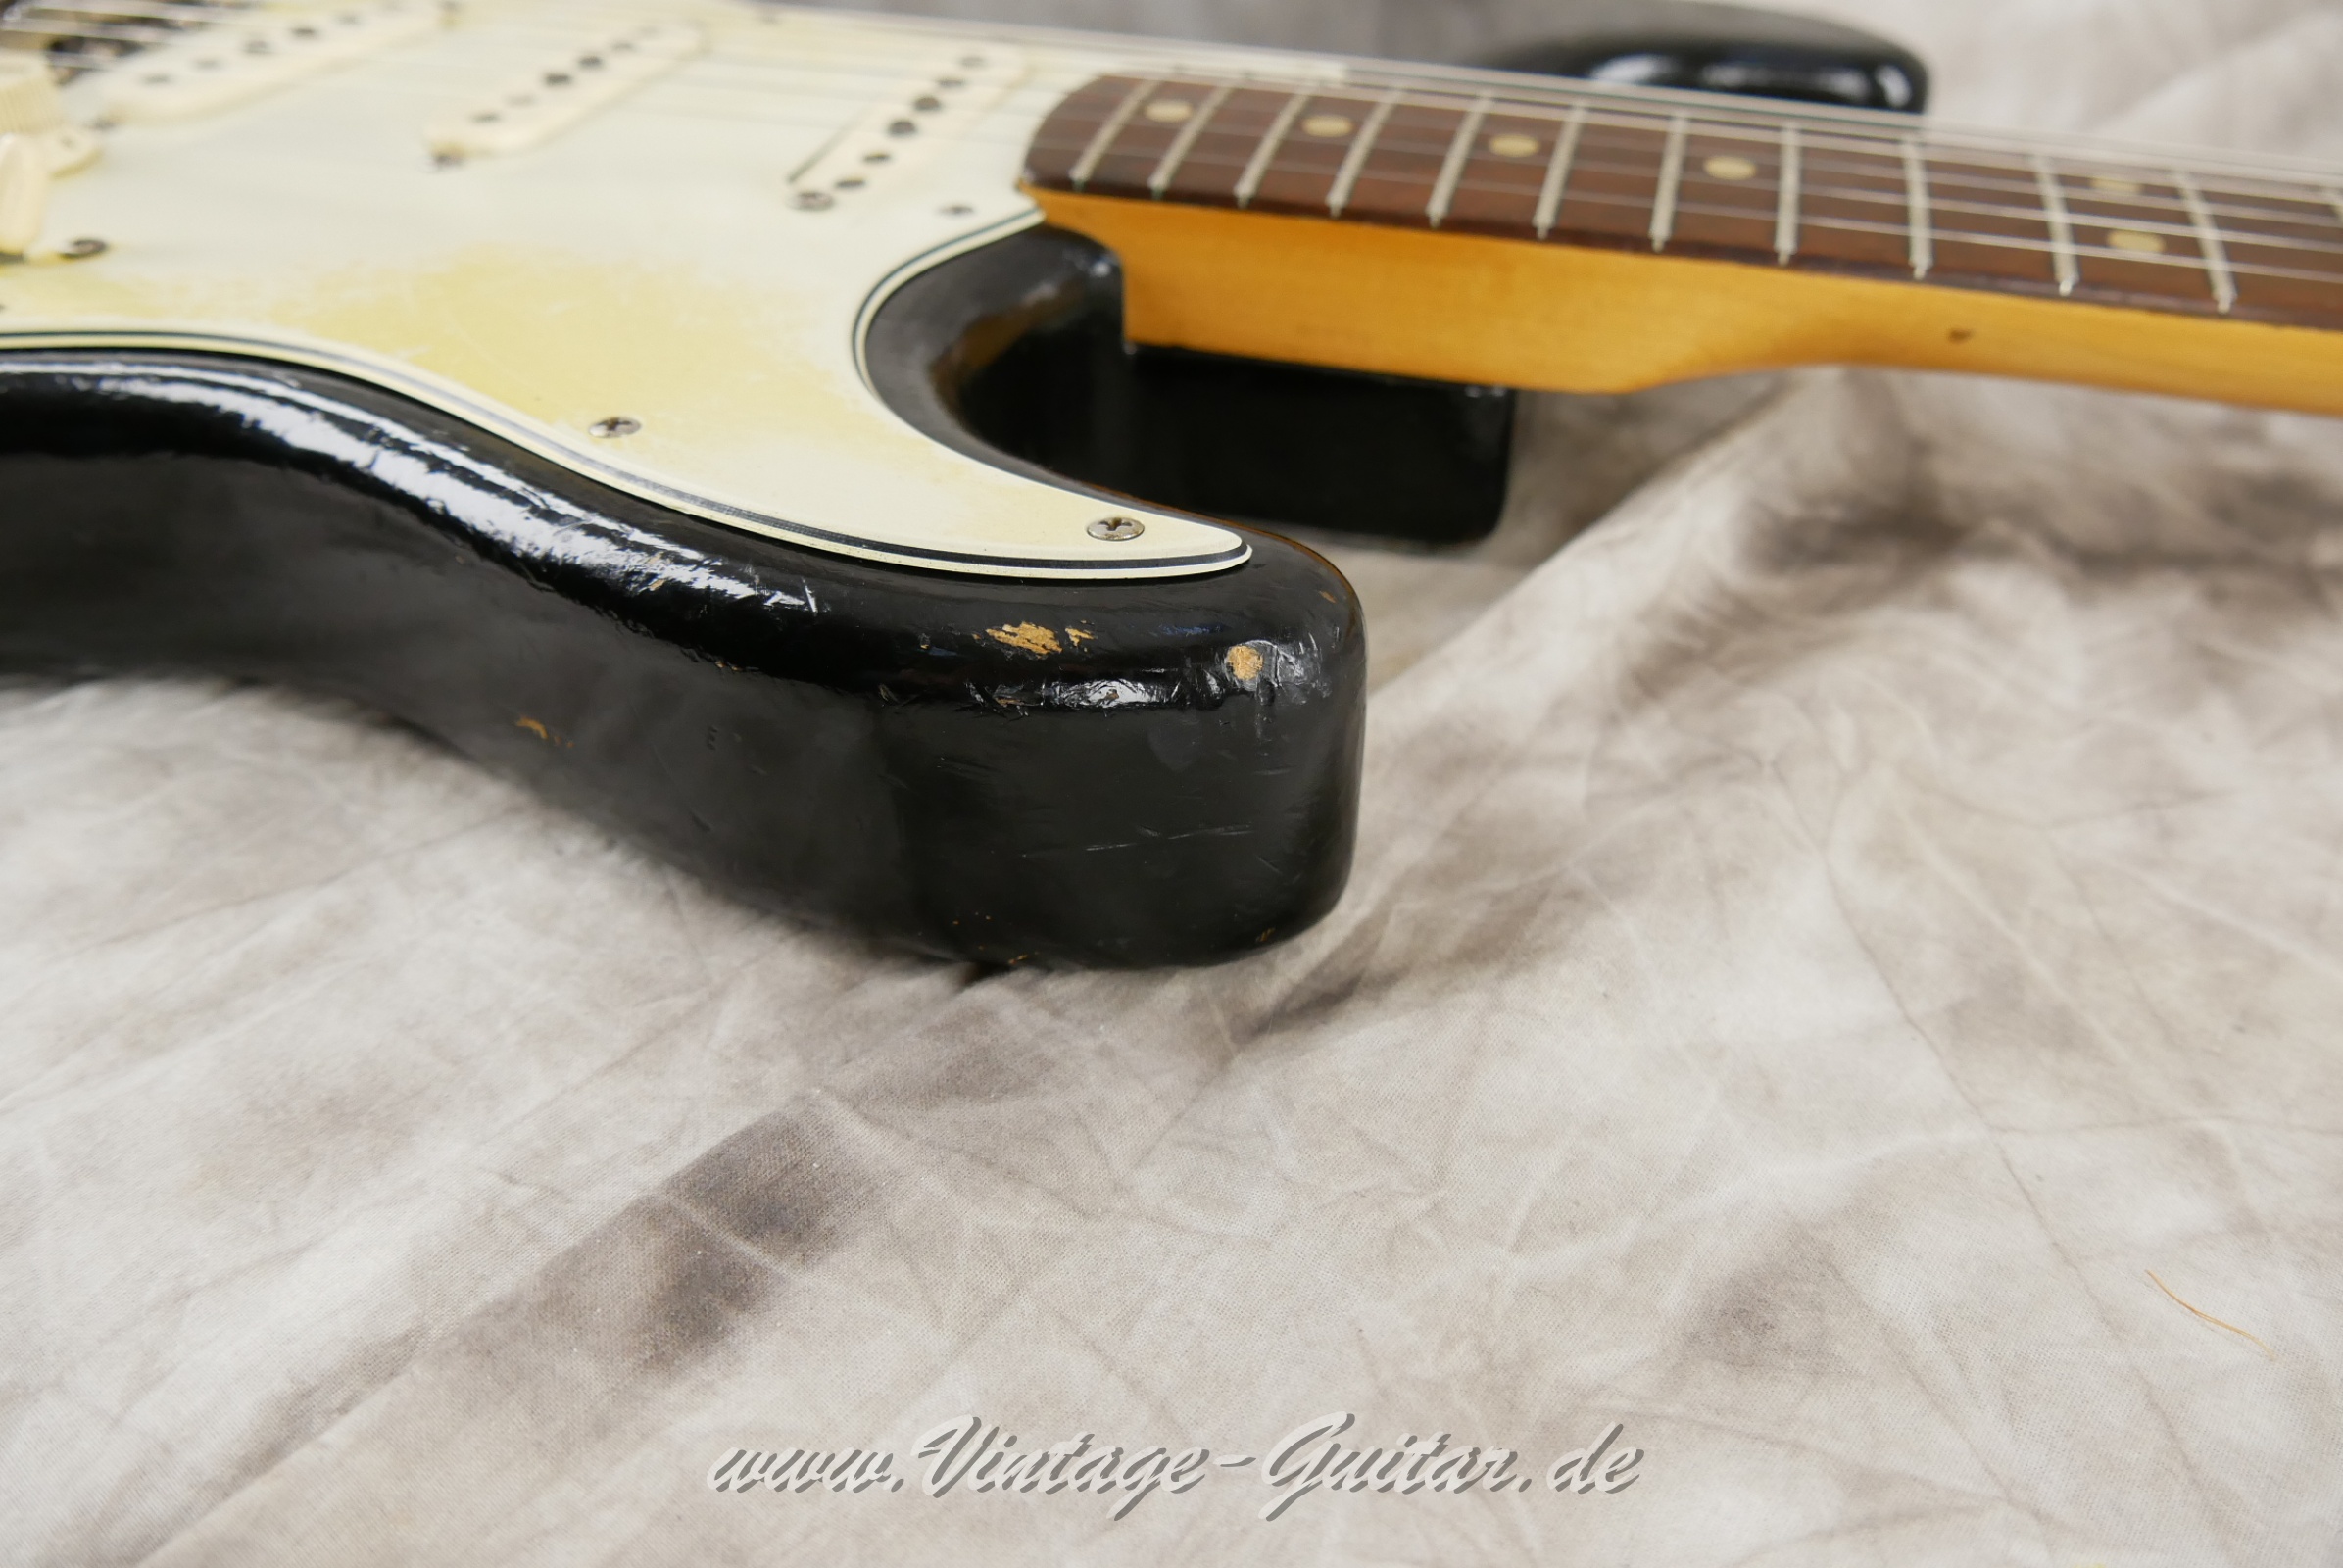 Fender-Stratocaster-1964-body-with-1969-neck-black-018.jpg